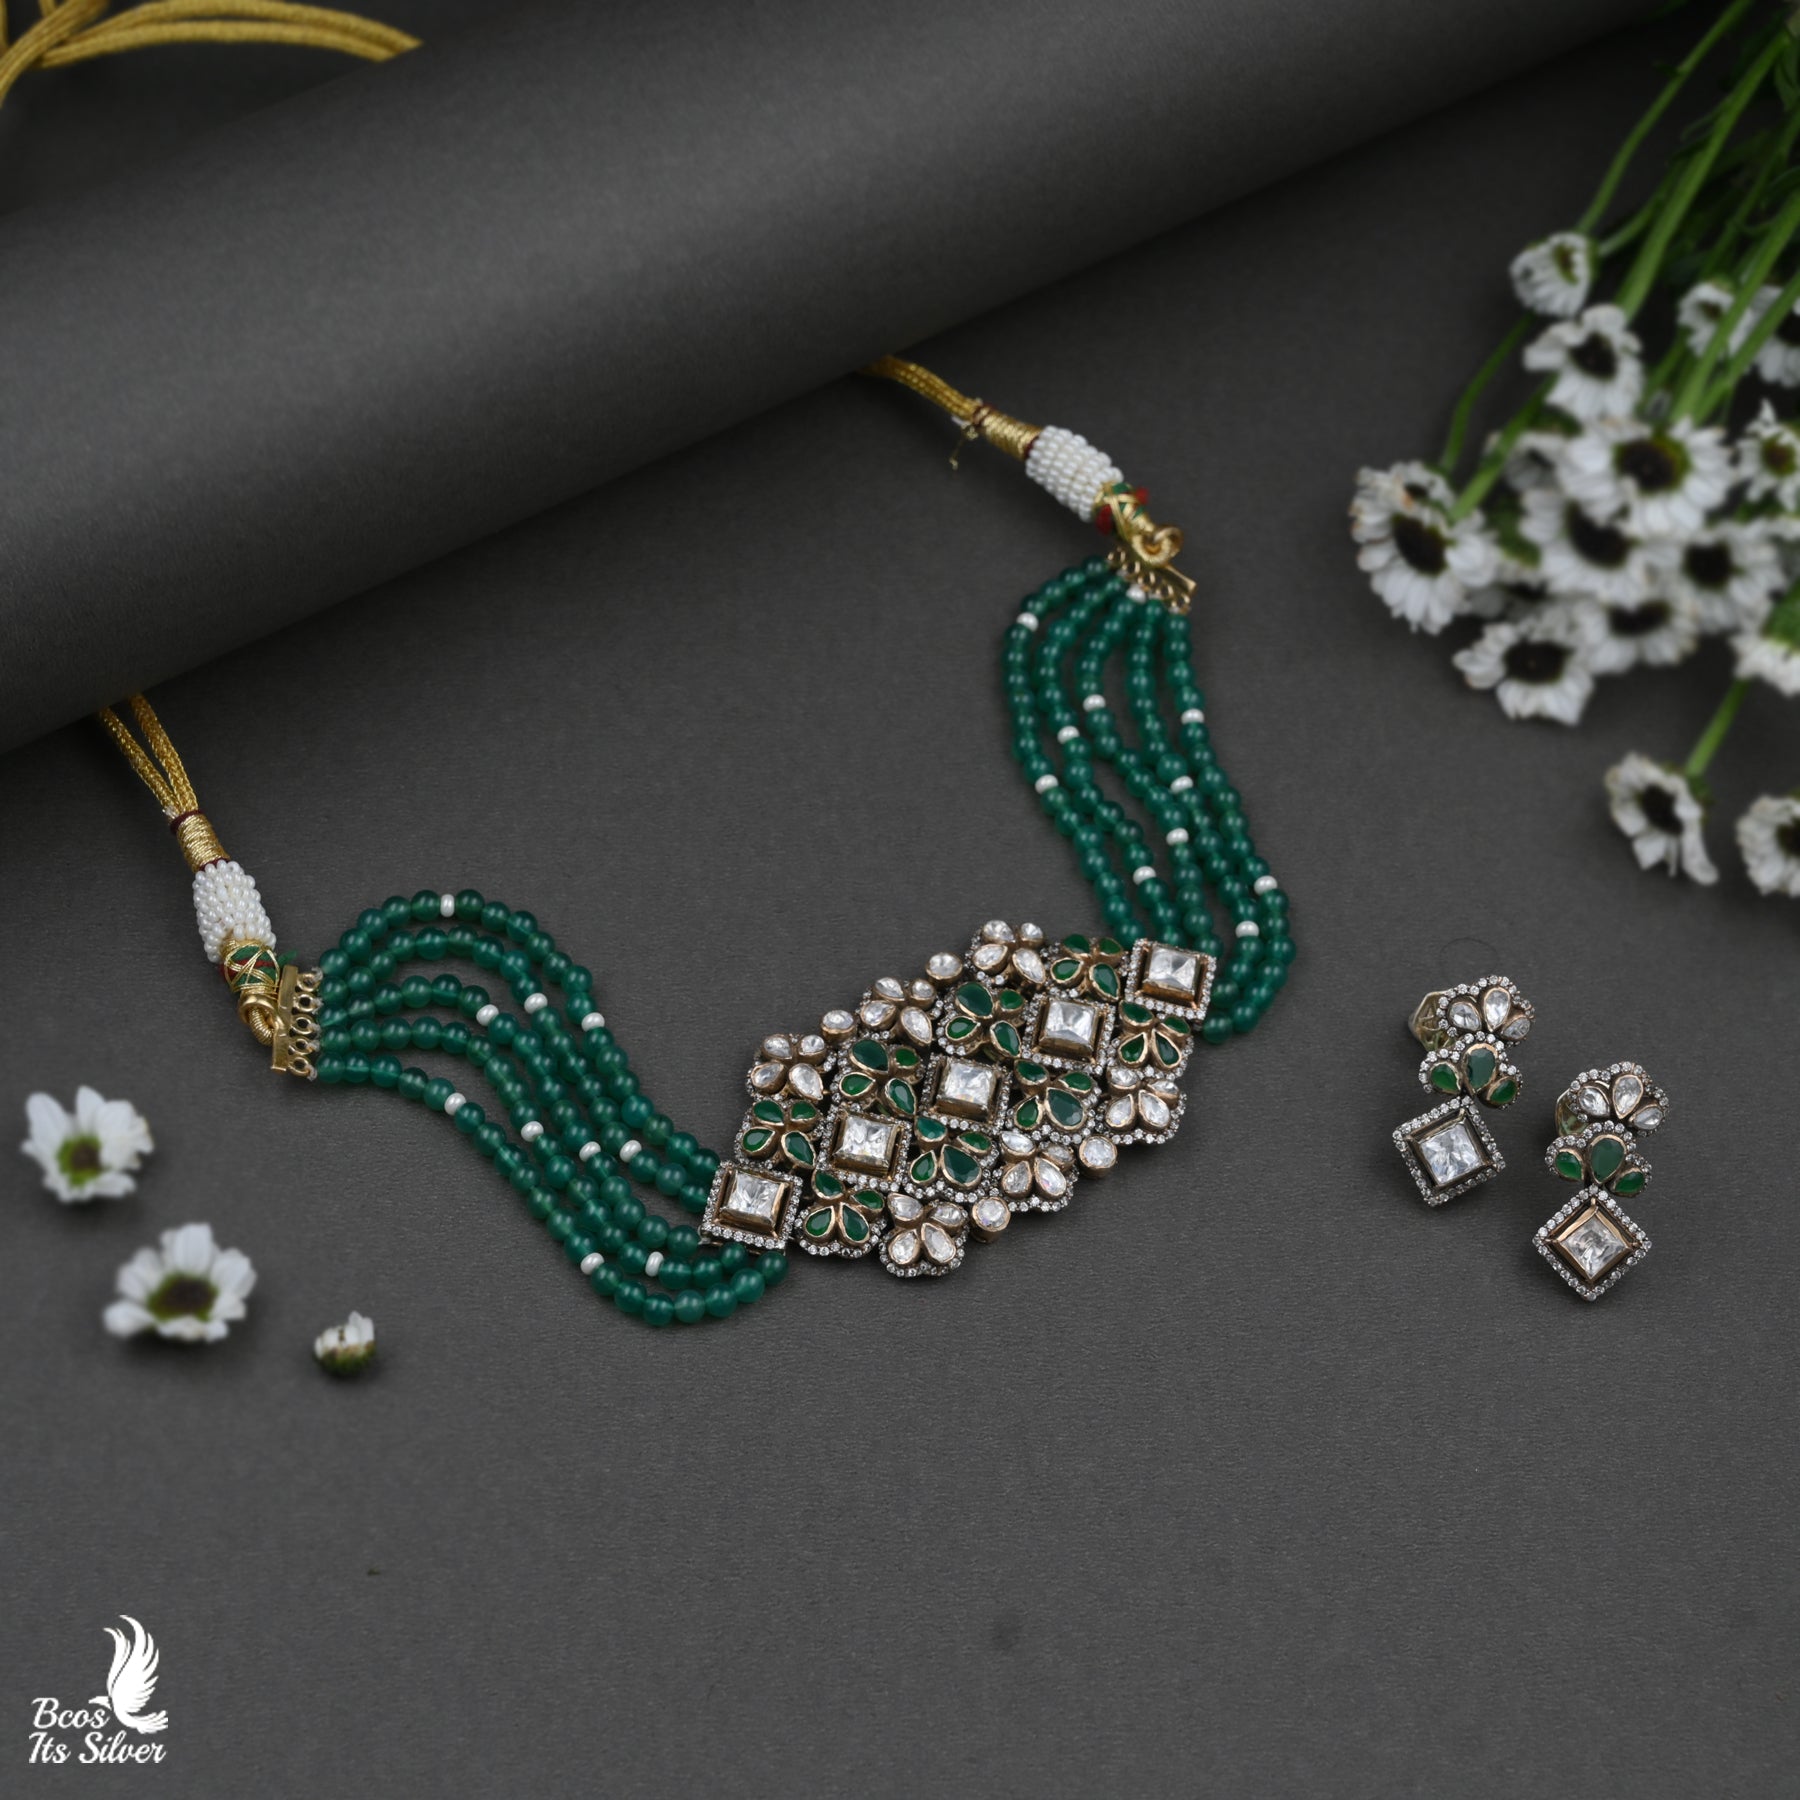 Victorian Beads Choker - 3983